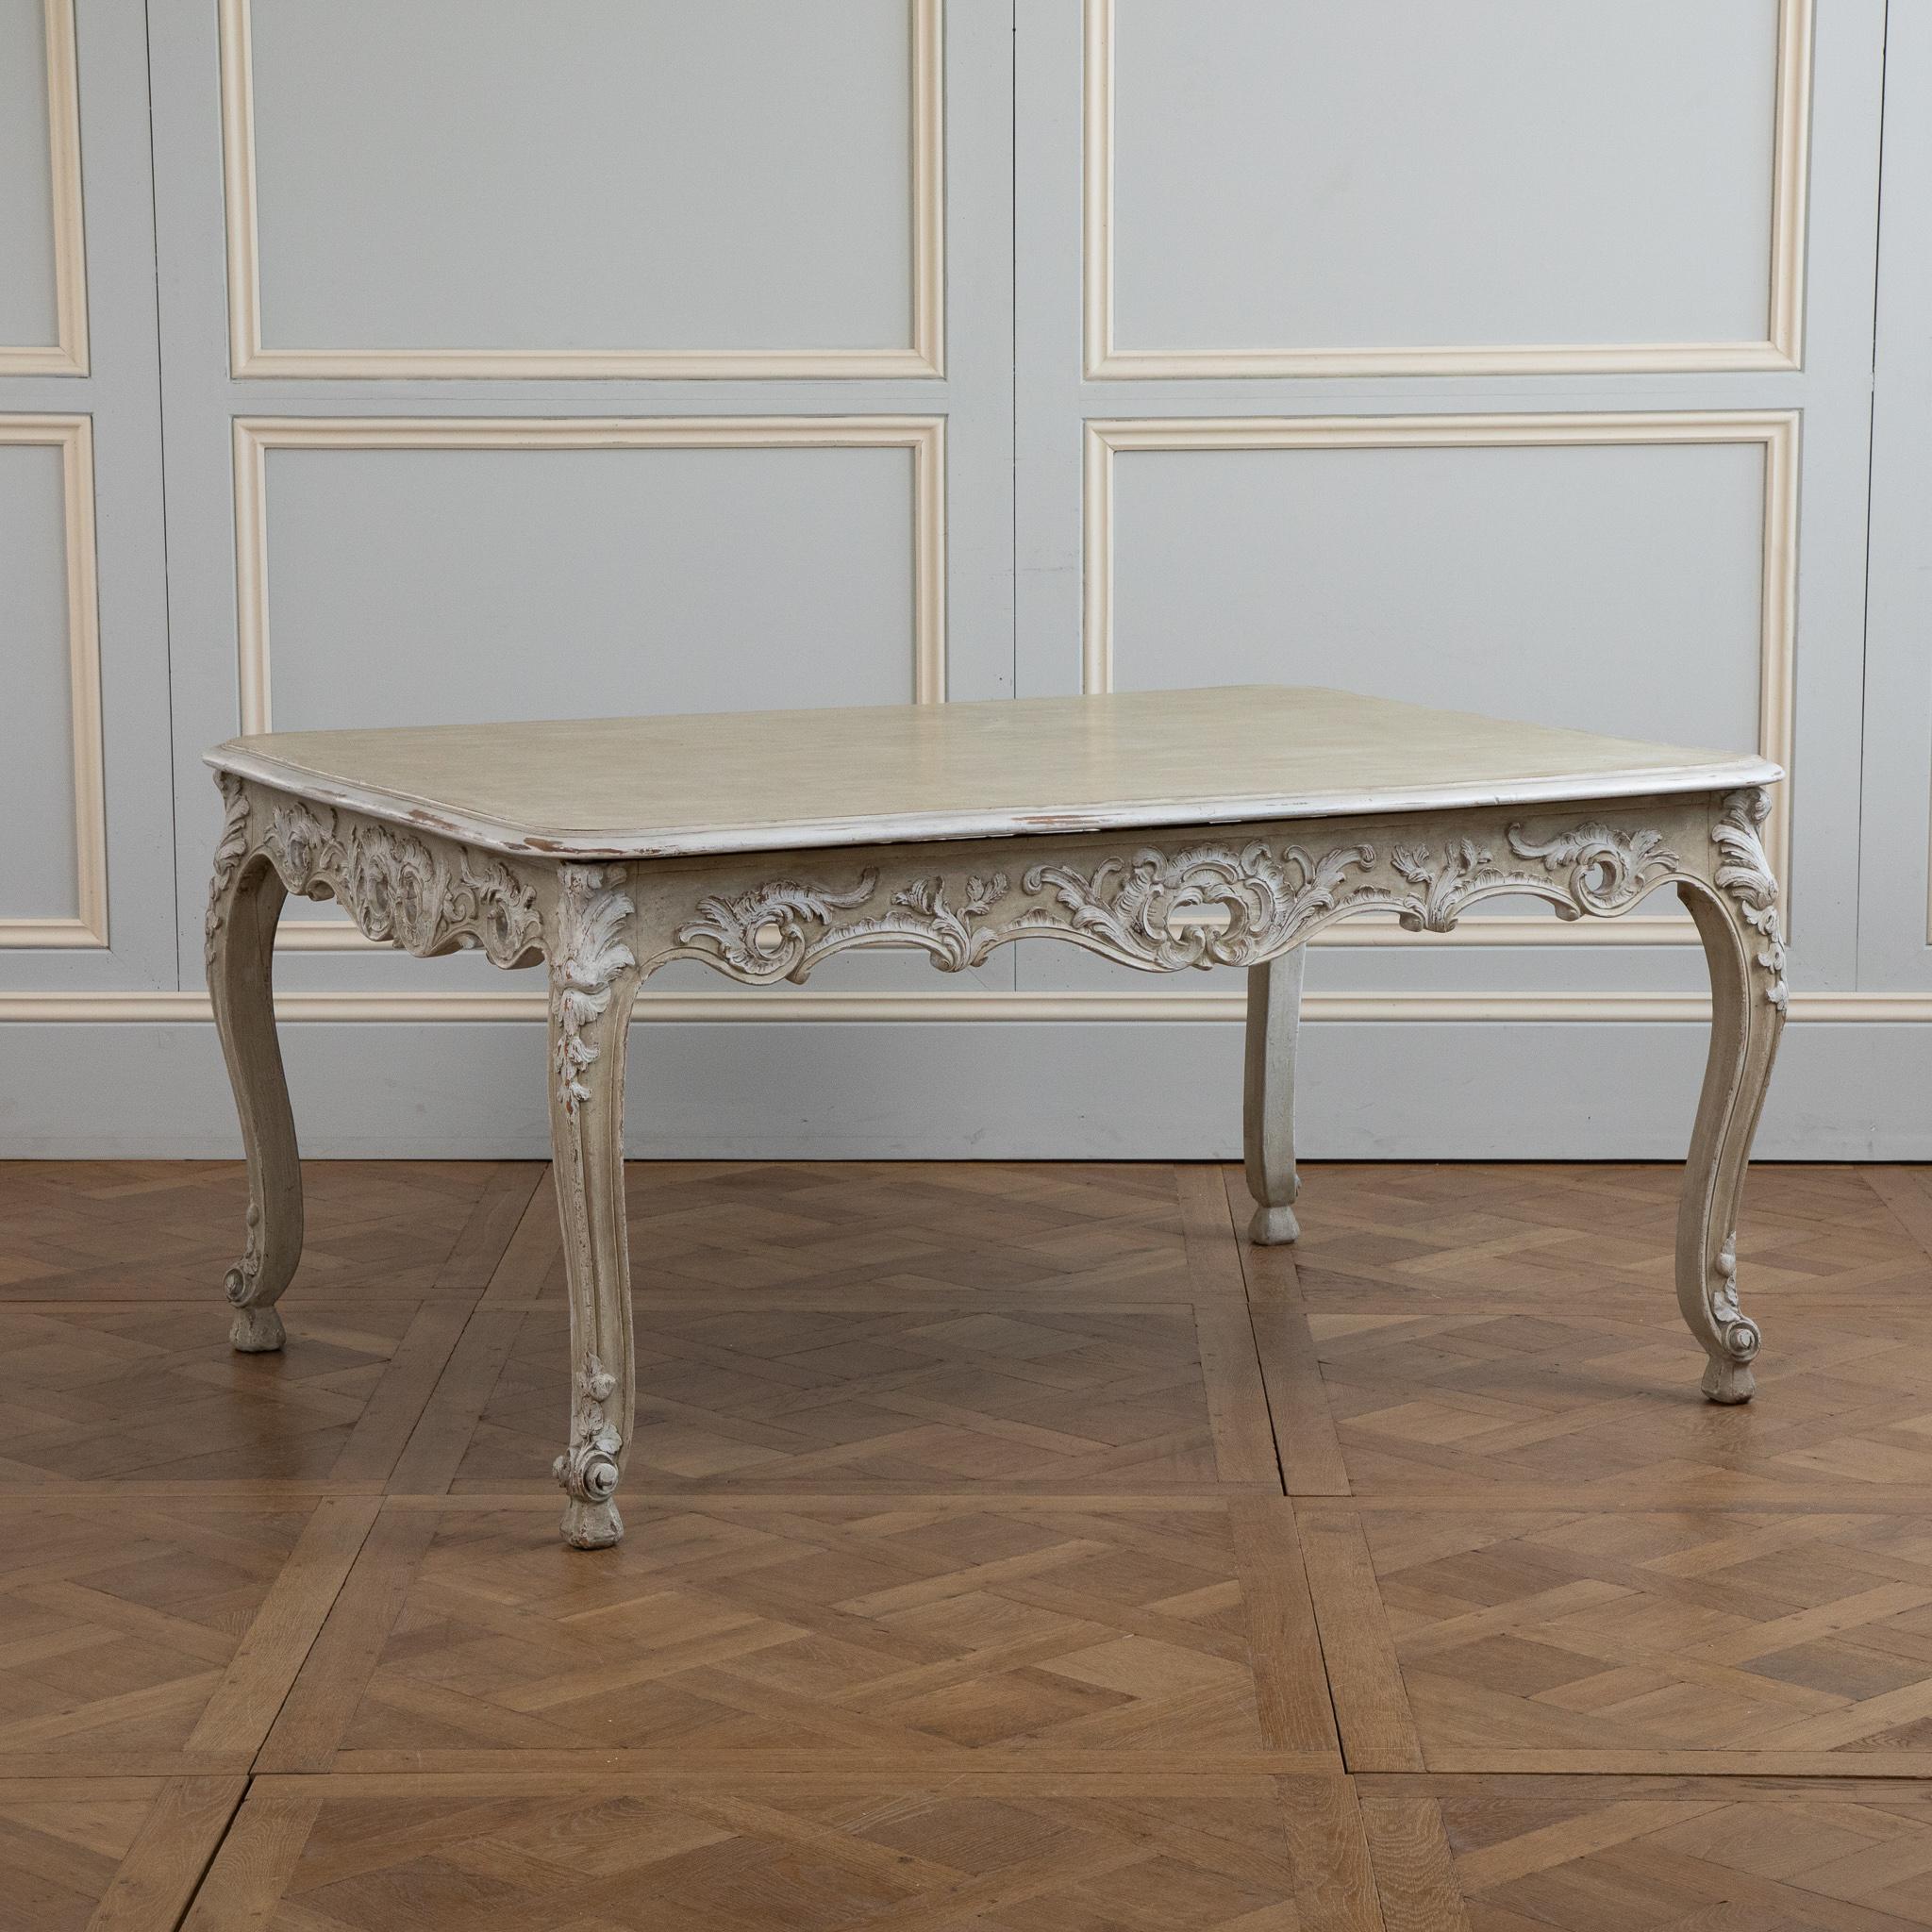 Tisch im Louis XV-Stil im Rokoko-Stil.
fein geschnitzte Details mit Akanthusblättern und Louis XV Muscheln.
Auf Serpentinenbeinen mit großzügigen geschwungenen Füßen sitzend. 
gestrichen in einem französischen Sage-Grün mit weißen Highlights
Kann